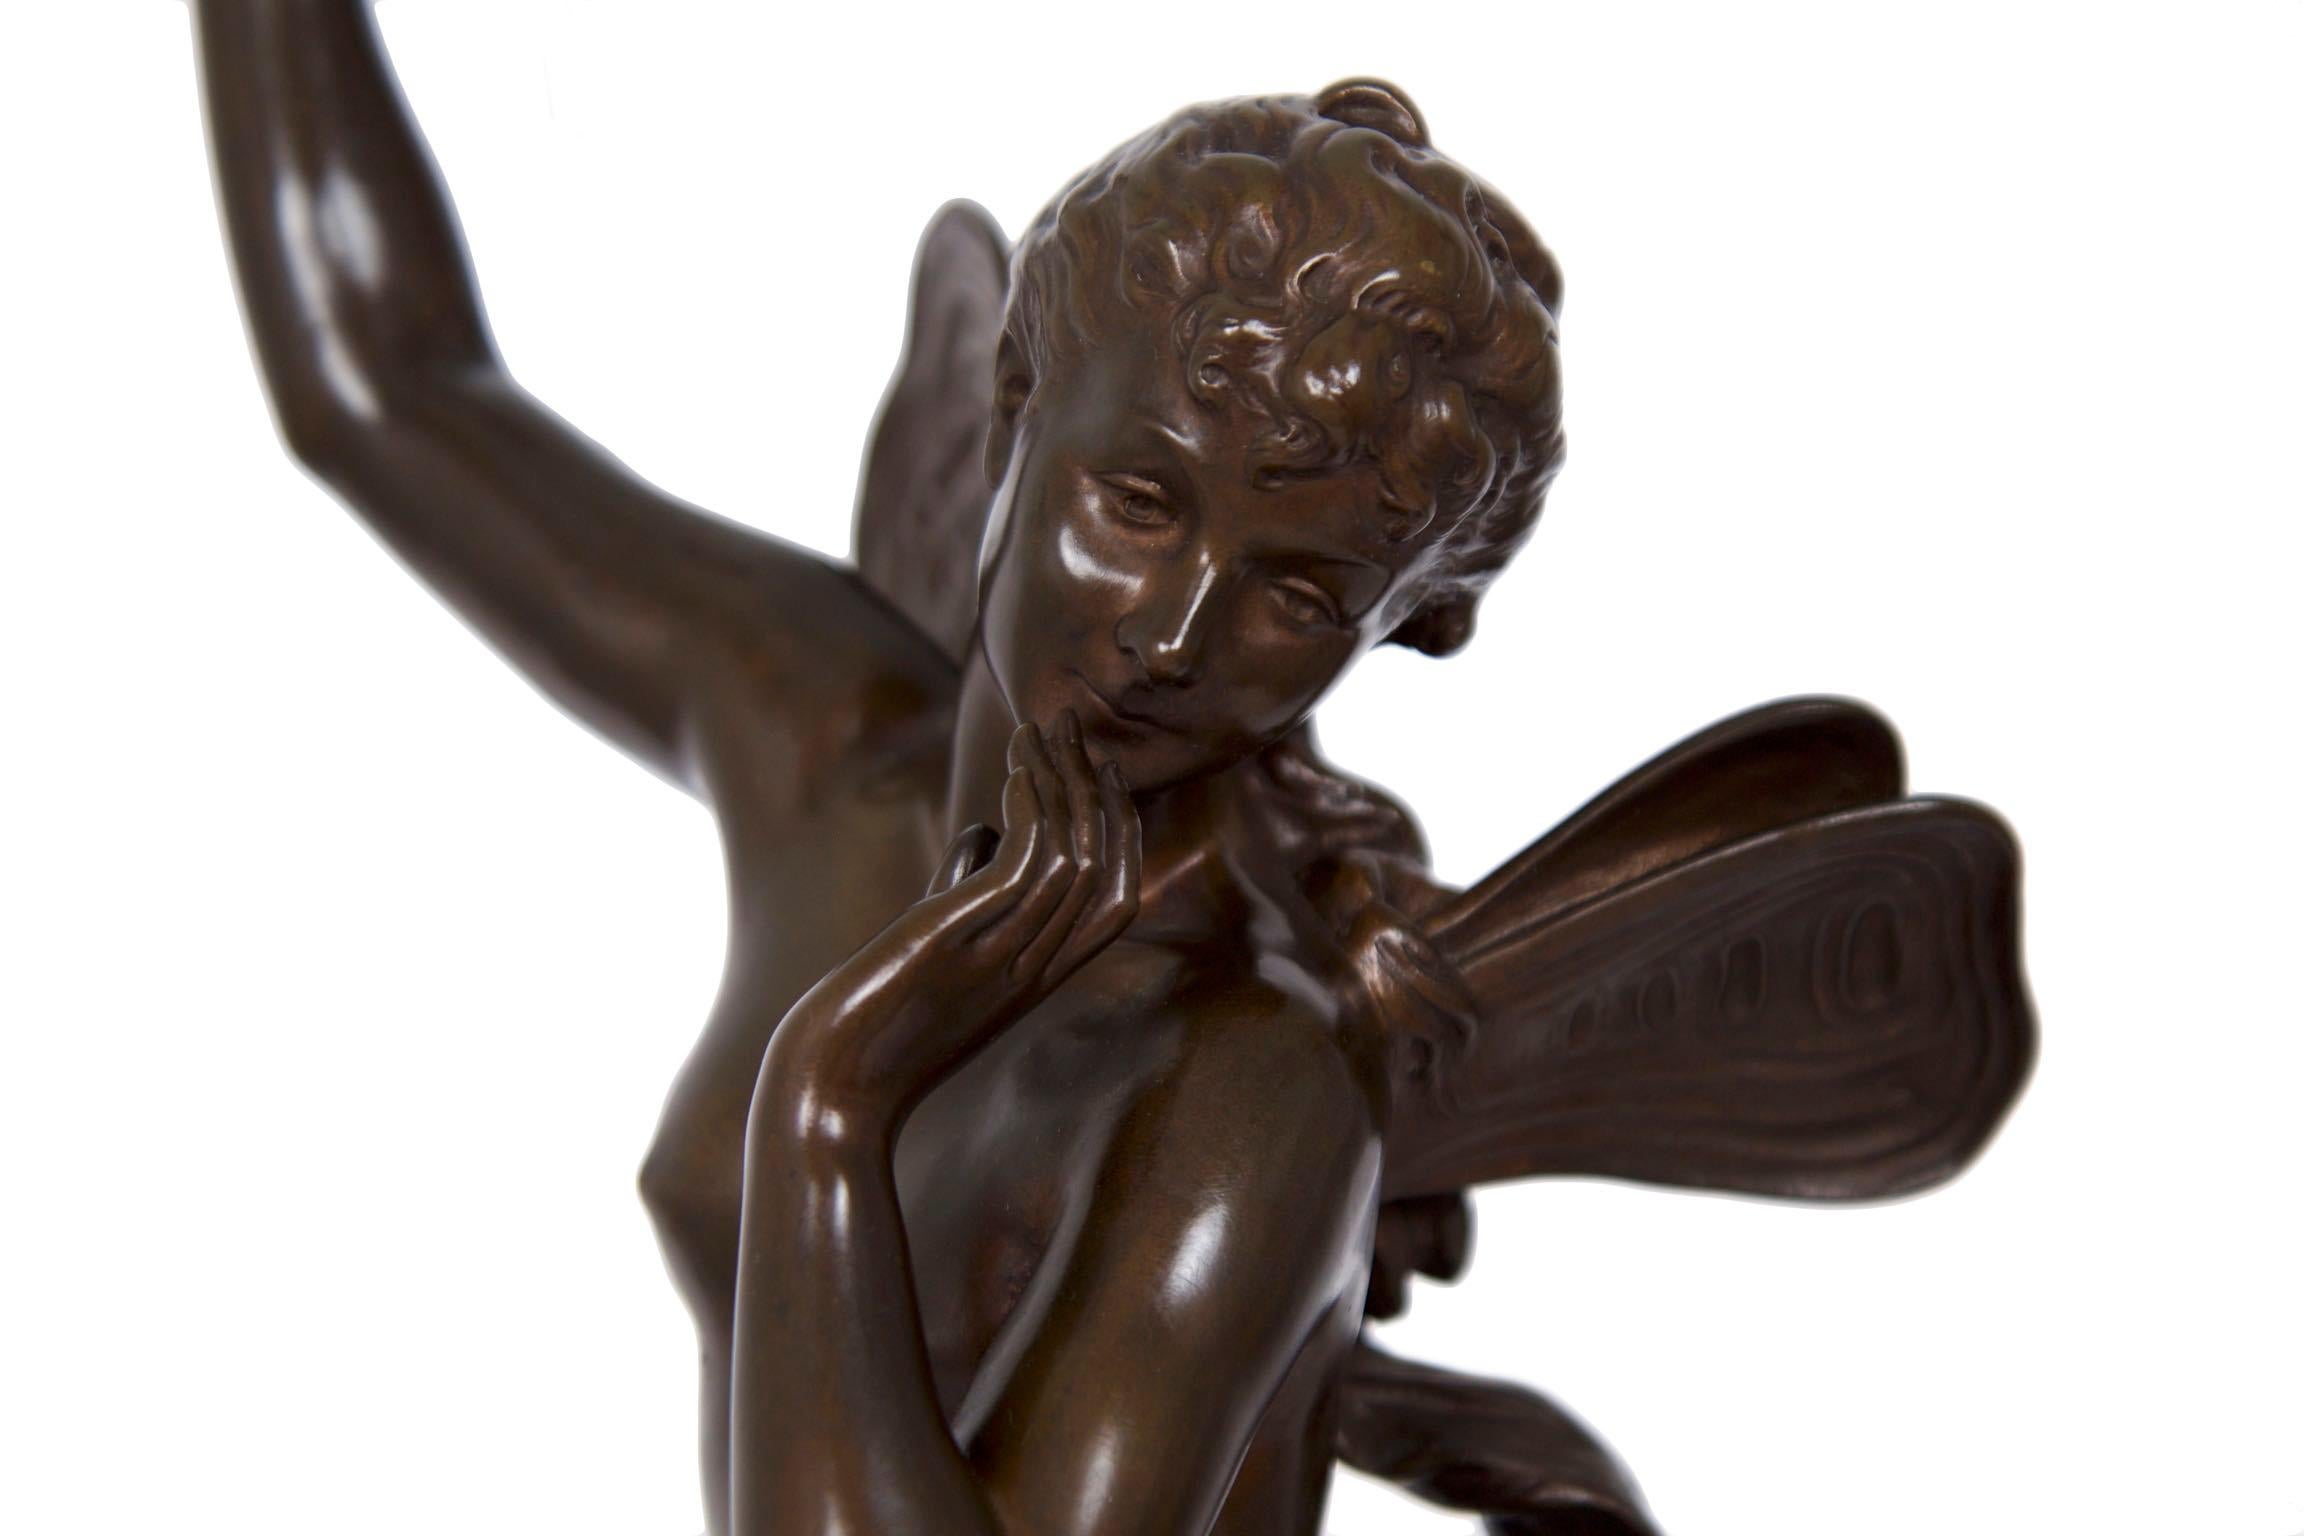 Antique Art Nouveau French Bronze Sculpture of “The Dream” by Lucien Pallez 1